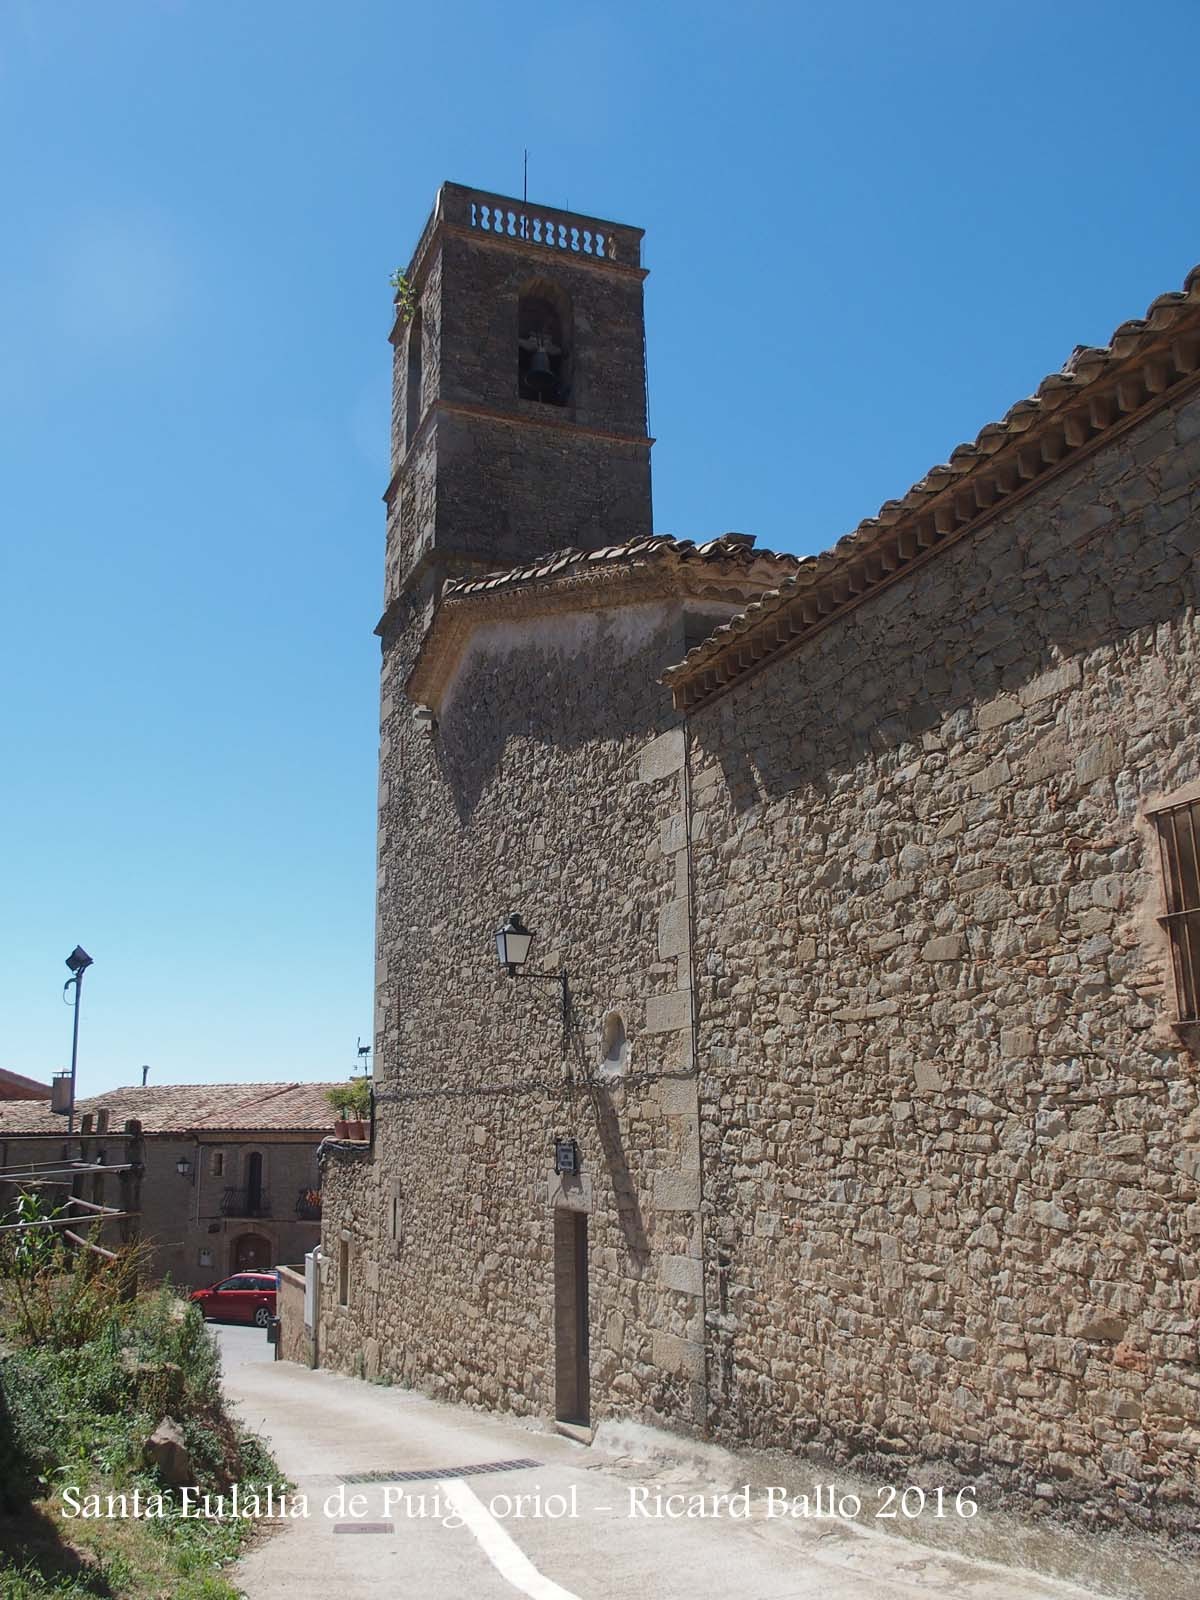 Església de Santa Eulàlia de Puig-oriol – Lluçà